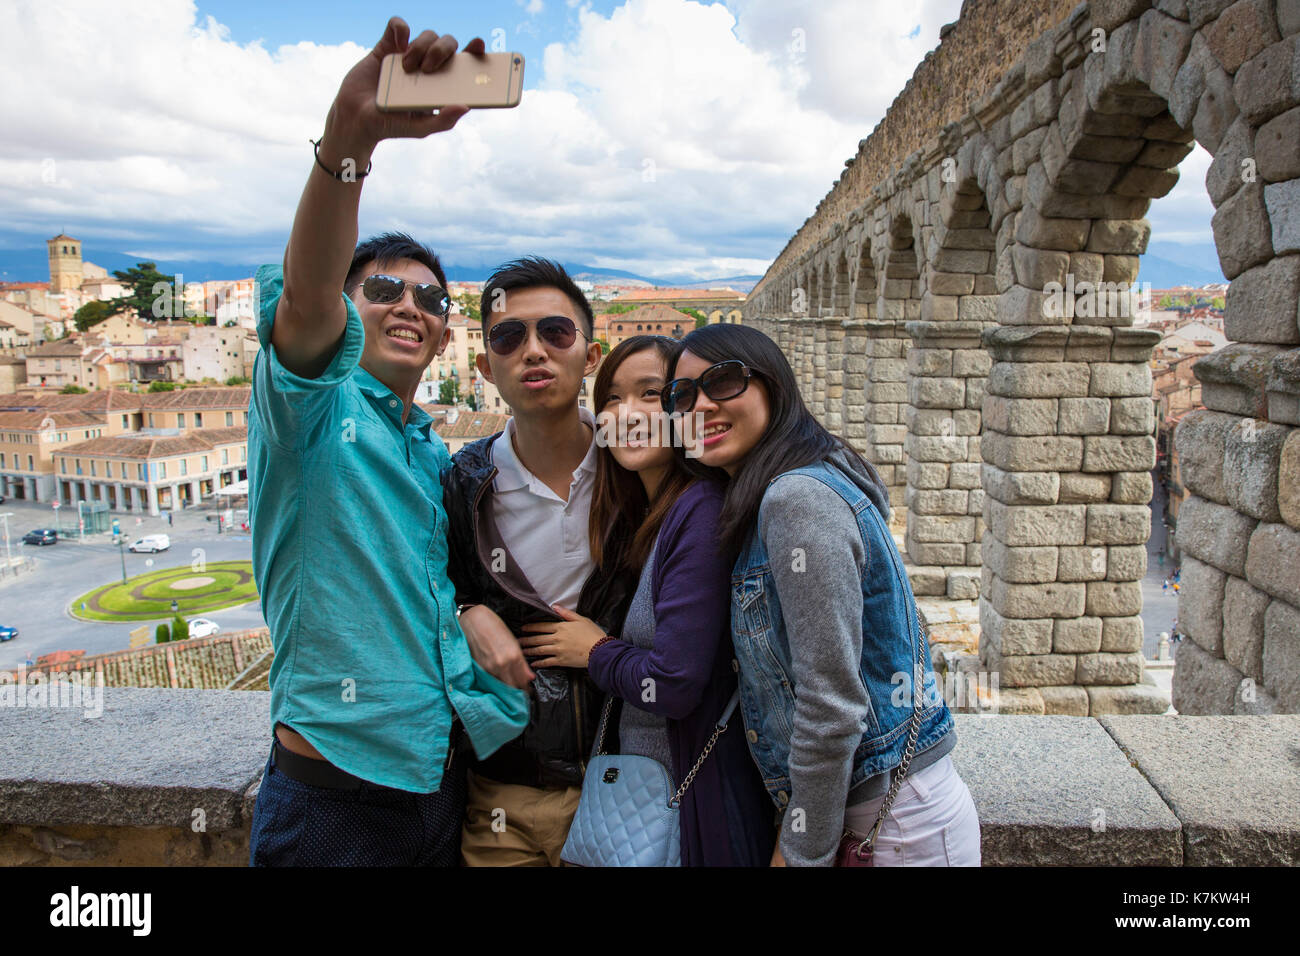 Giovani turisti cinesi tenendo selfie fotografie con iphone smartphone a famoso acquedotto romano di Segovia, Spagna Foto Stock